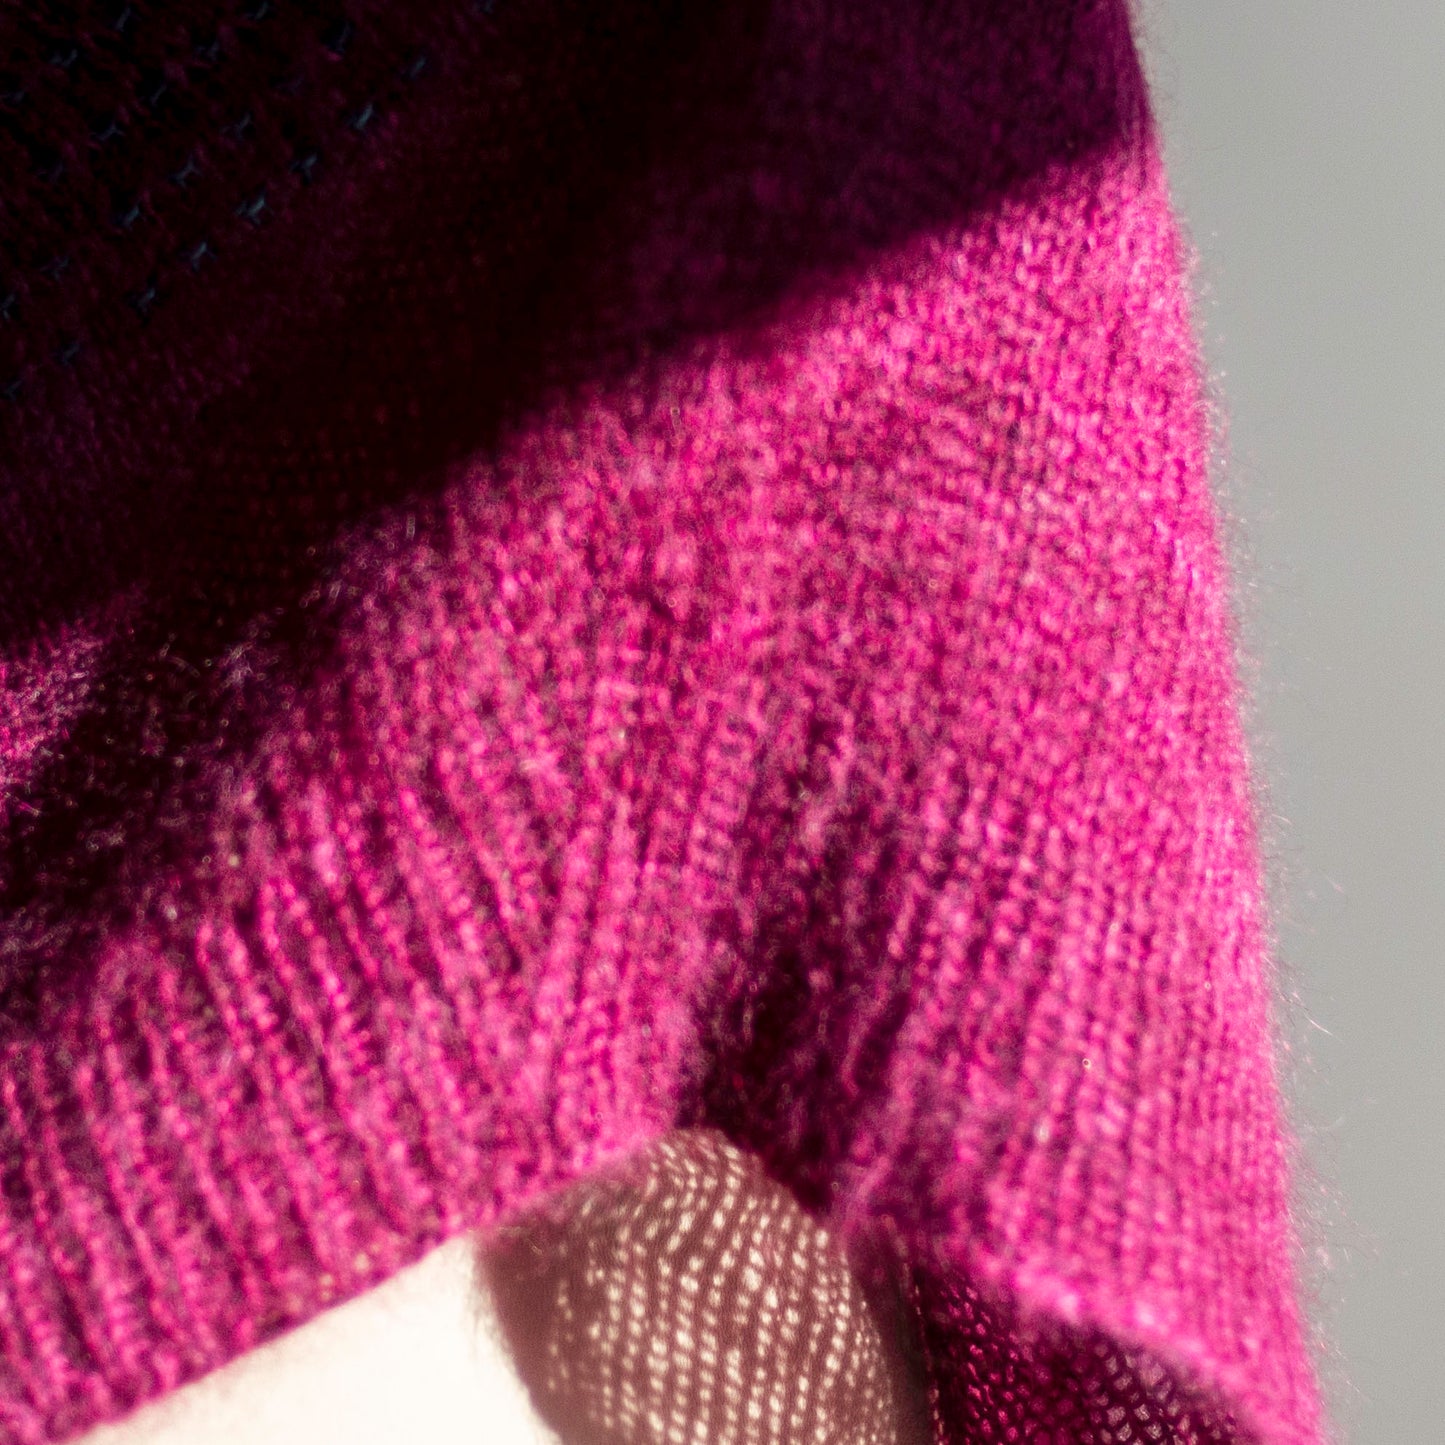 Yoke Sweater Knitting Pattern, Mohair Silk, Slipped Stitch, The Binary Code